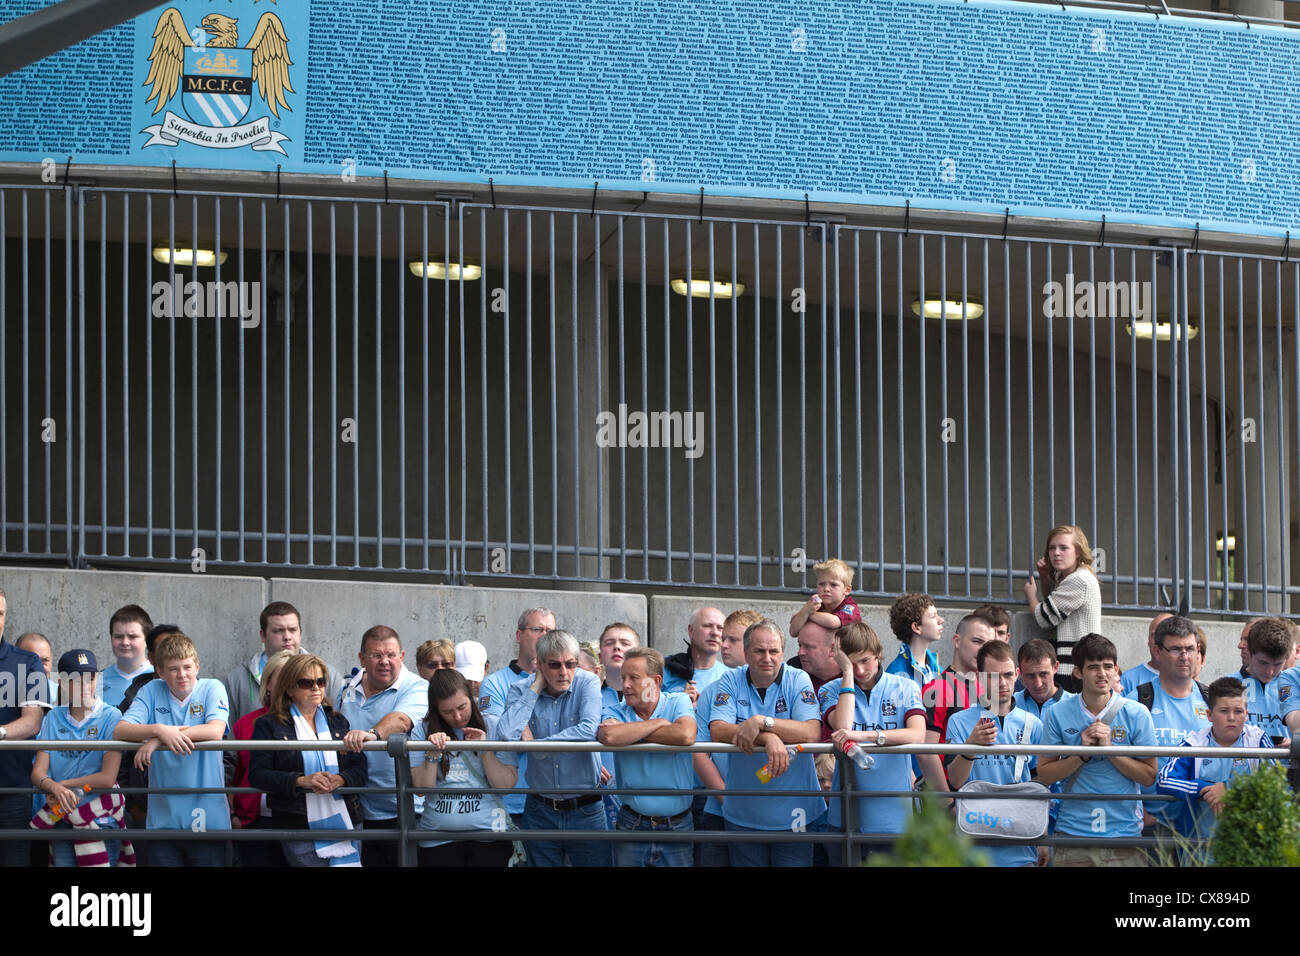 Los aficionados esperan para satisfacer sus ídolos fuera del Etihad Stadium, Manchester City Football Club, Manchester, Inglaterra, Reino Unido Foto de stock